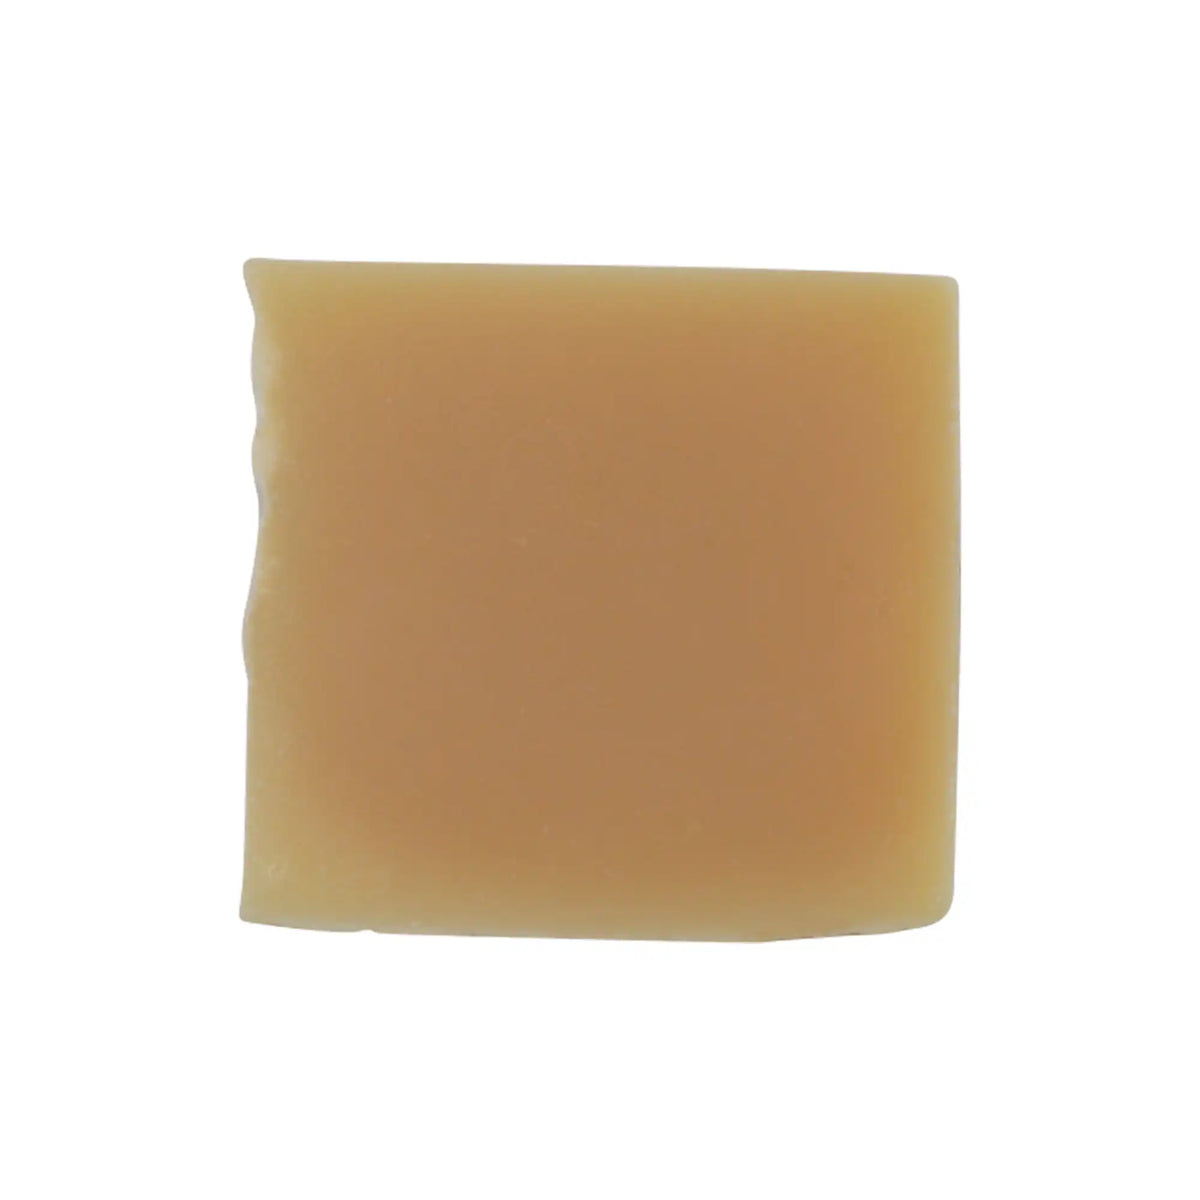 Natural Citrón Soap